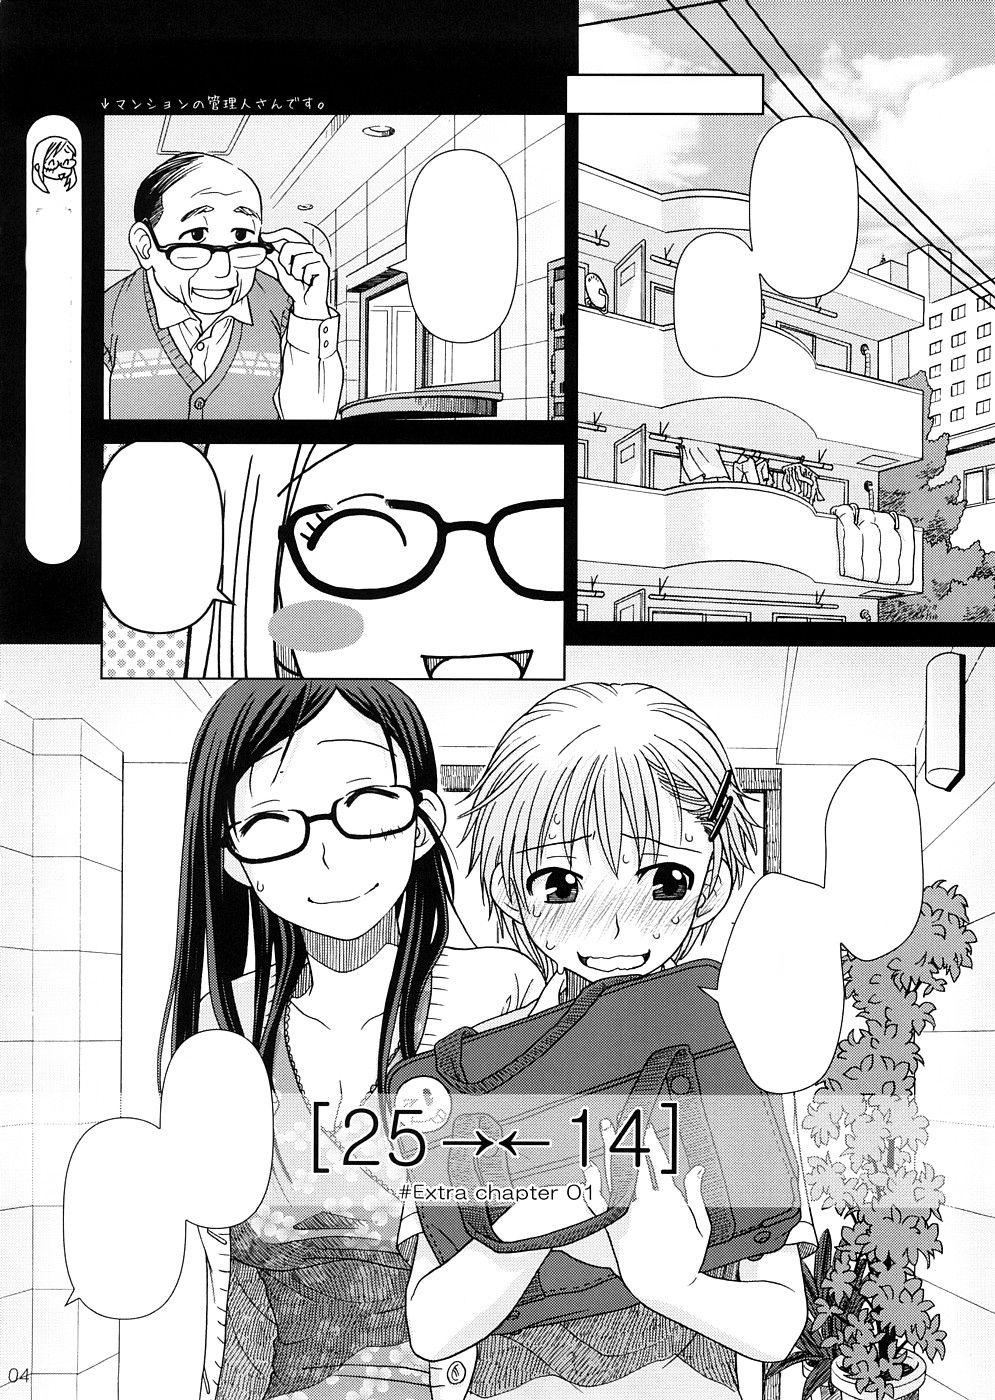 (COMIC1☆2) [Otaku Beam (Ootsuka Mahiro)] 2514 [24→←14] #Extra chapter [Textless] 2